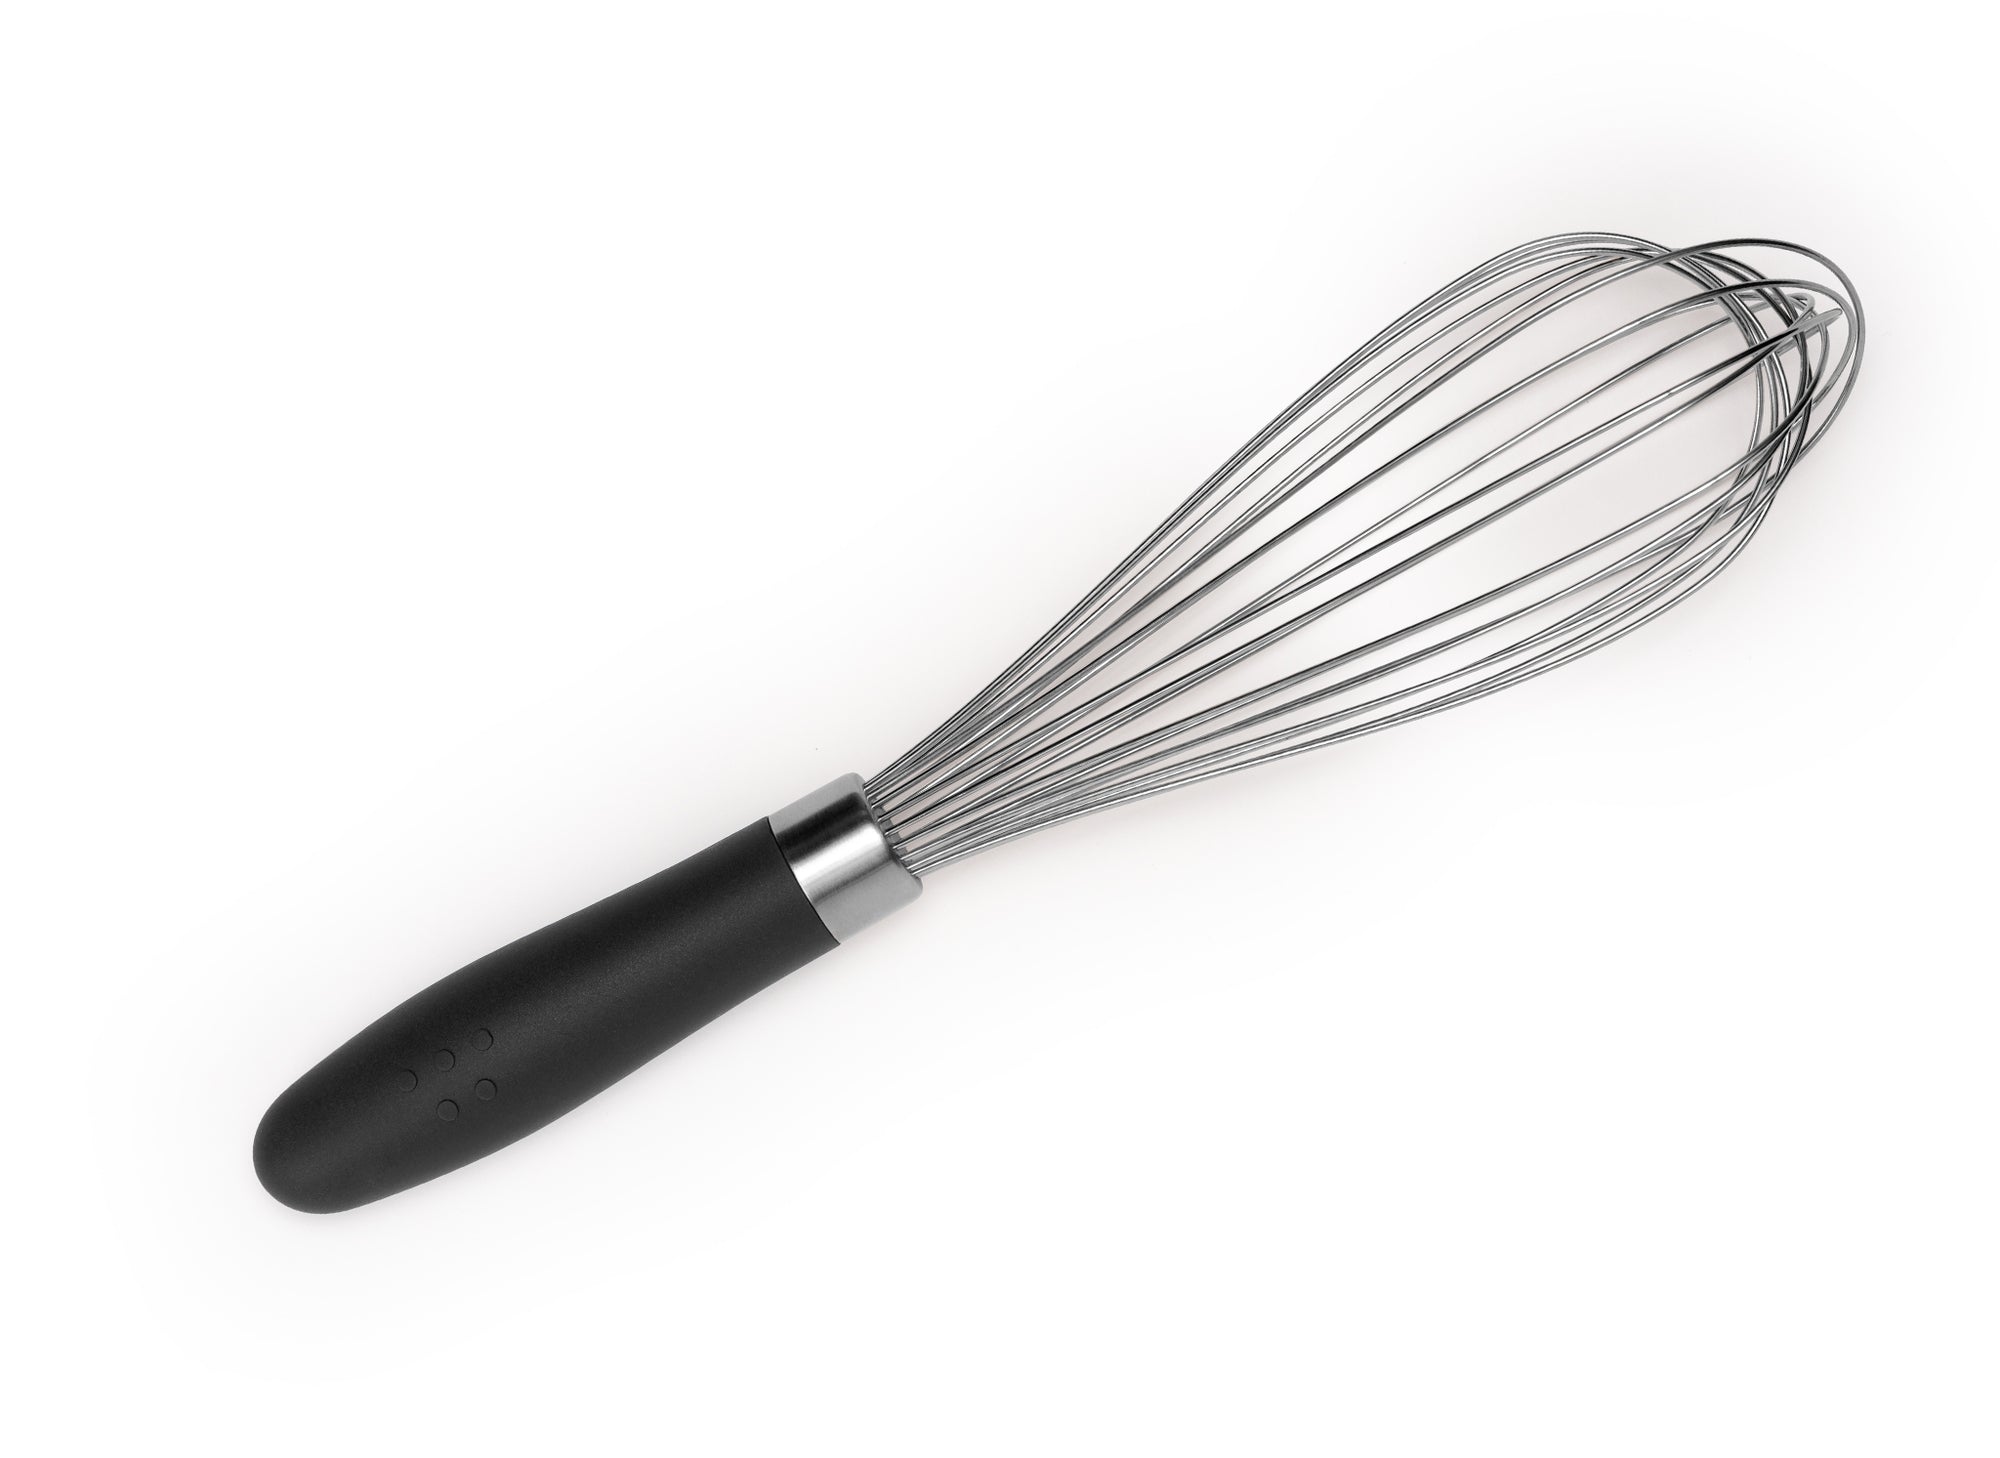 Essential Kitchen Utensils - Stainless Steel Whisk